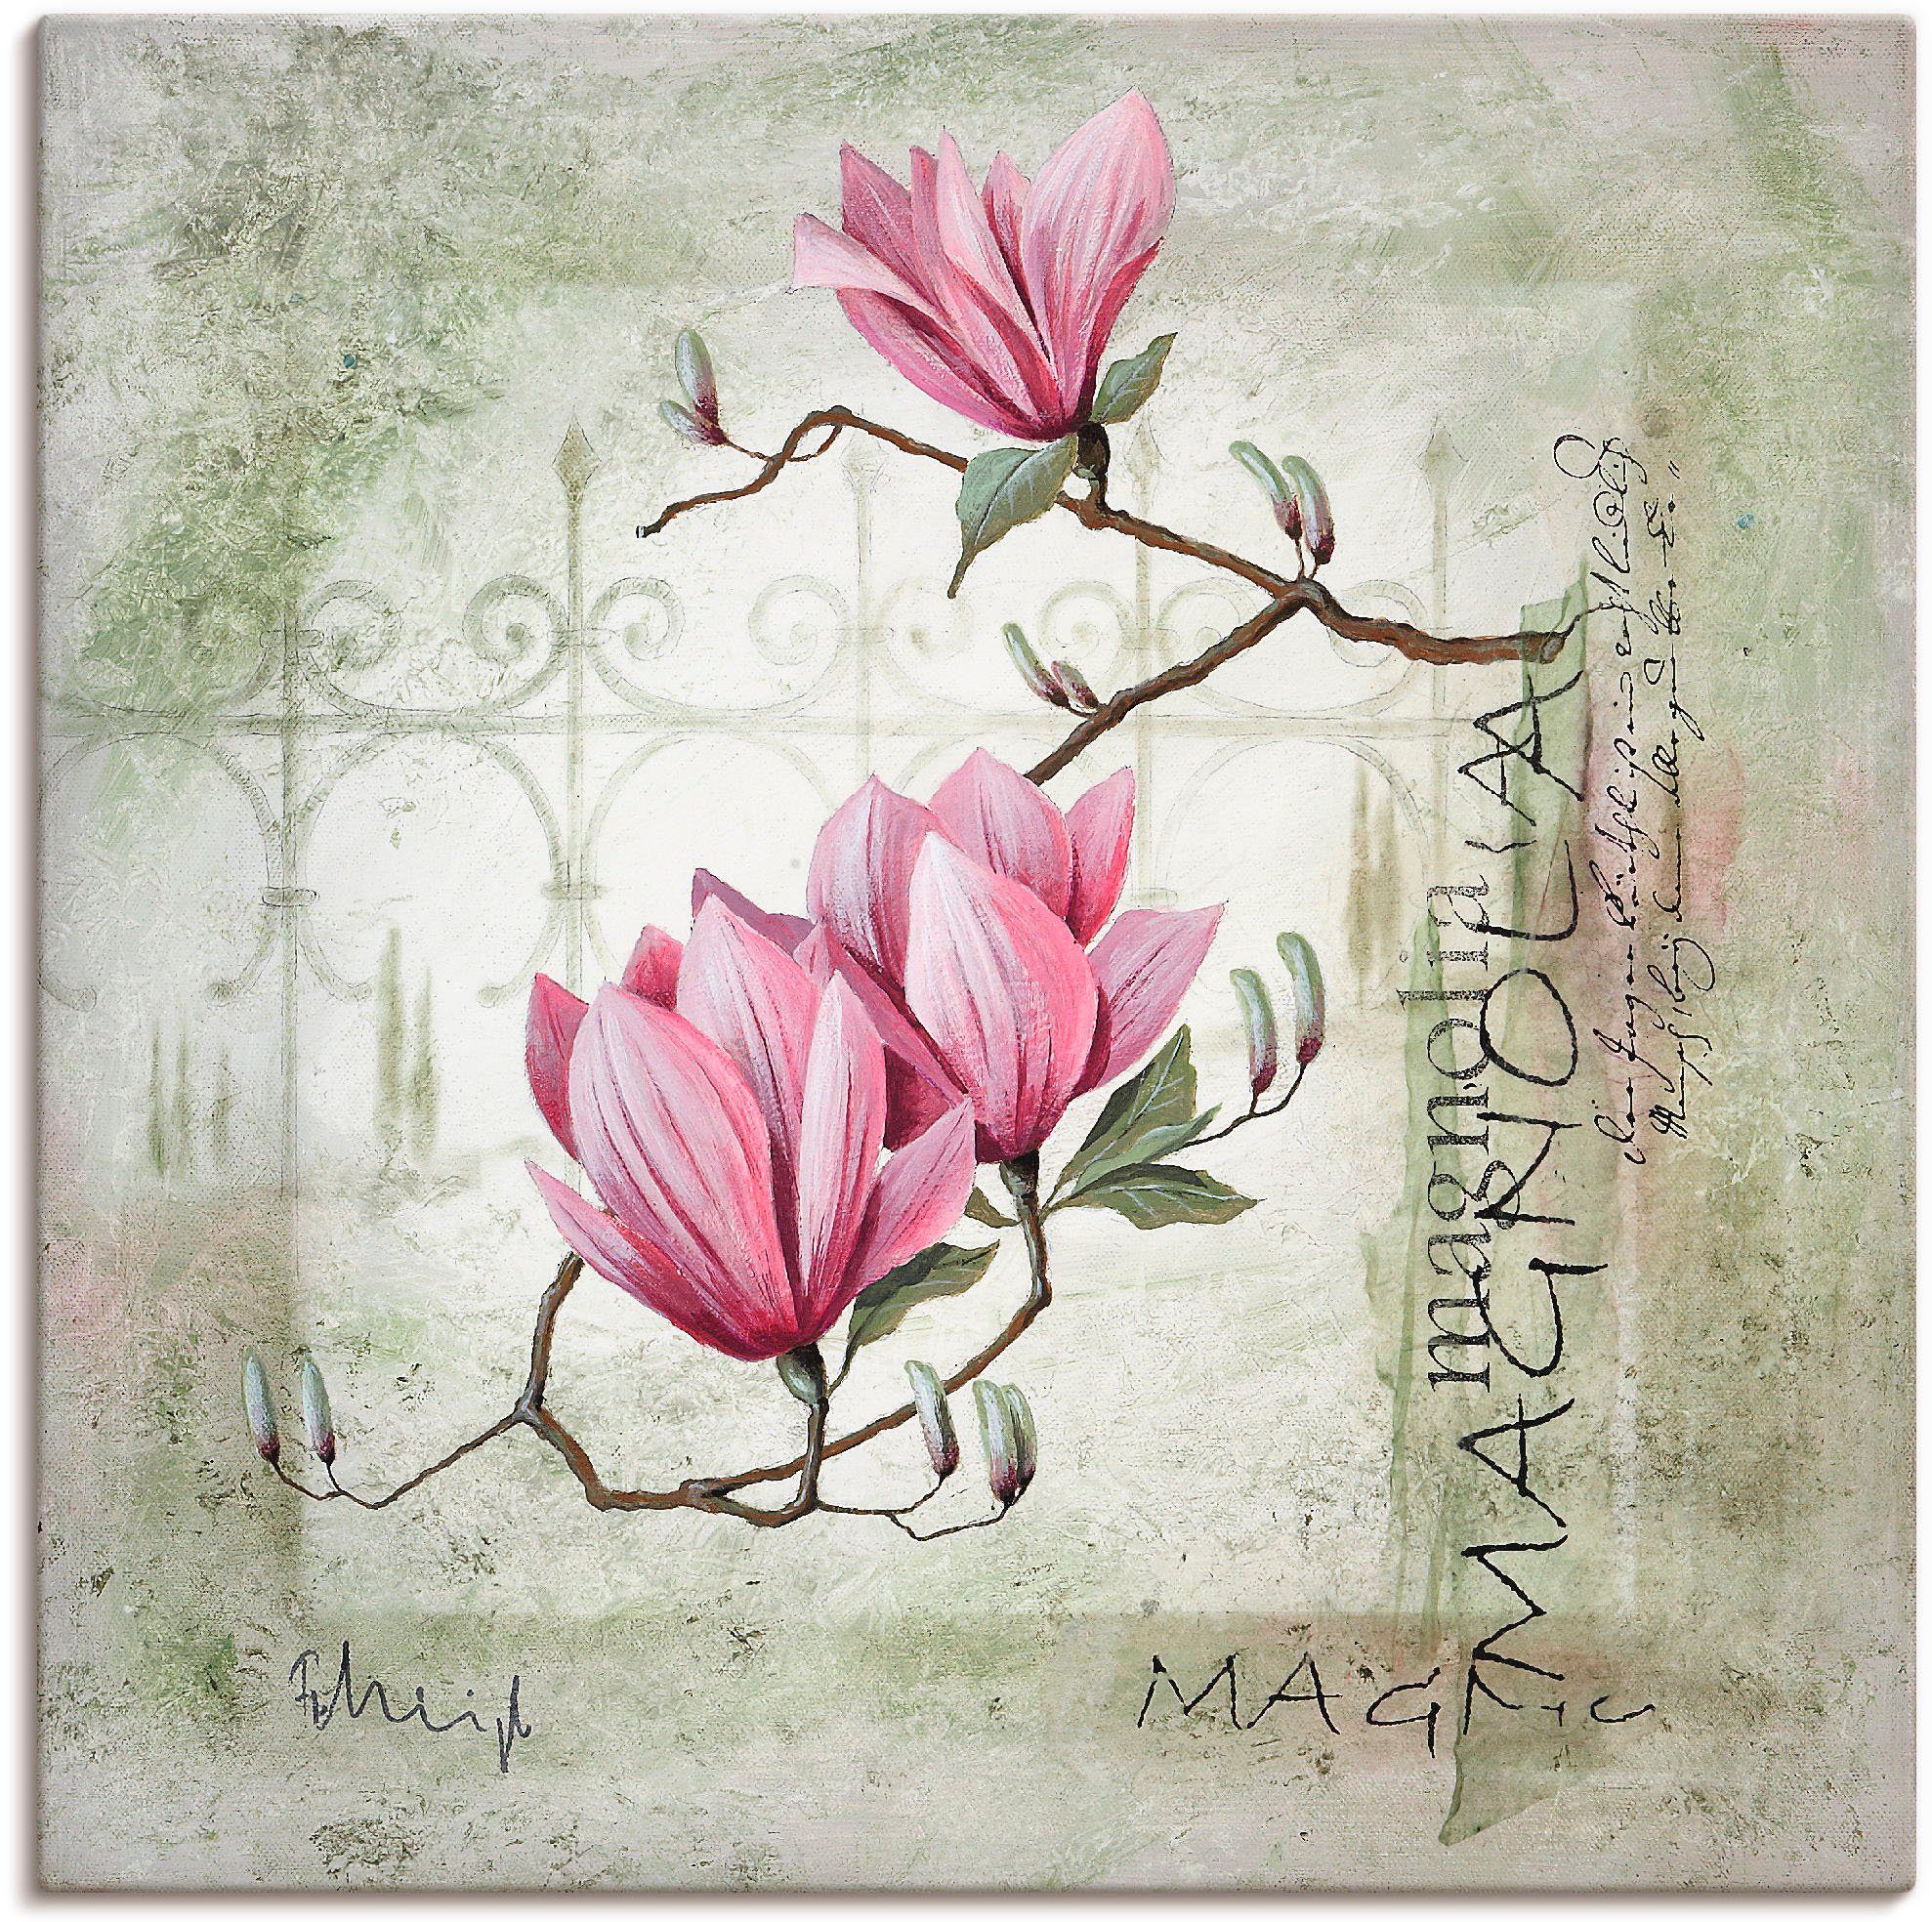 Artland Artprint Pinkkleurige magnolia in vele afmetingen & productsoorten -artprint op linnen, poster, muursticker / wandfolie ook geschikt voor de badkamer (1 stuk)